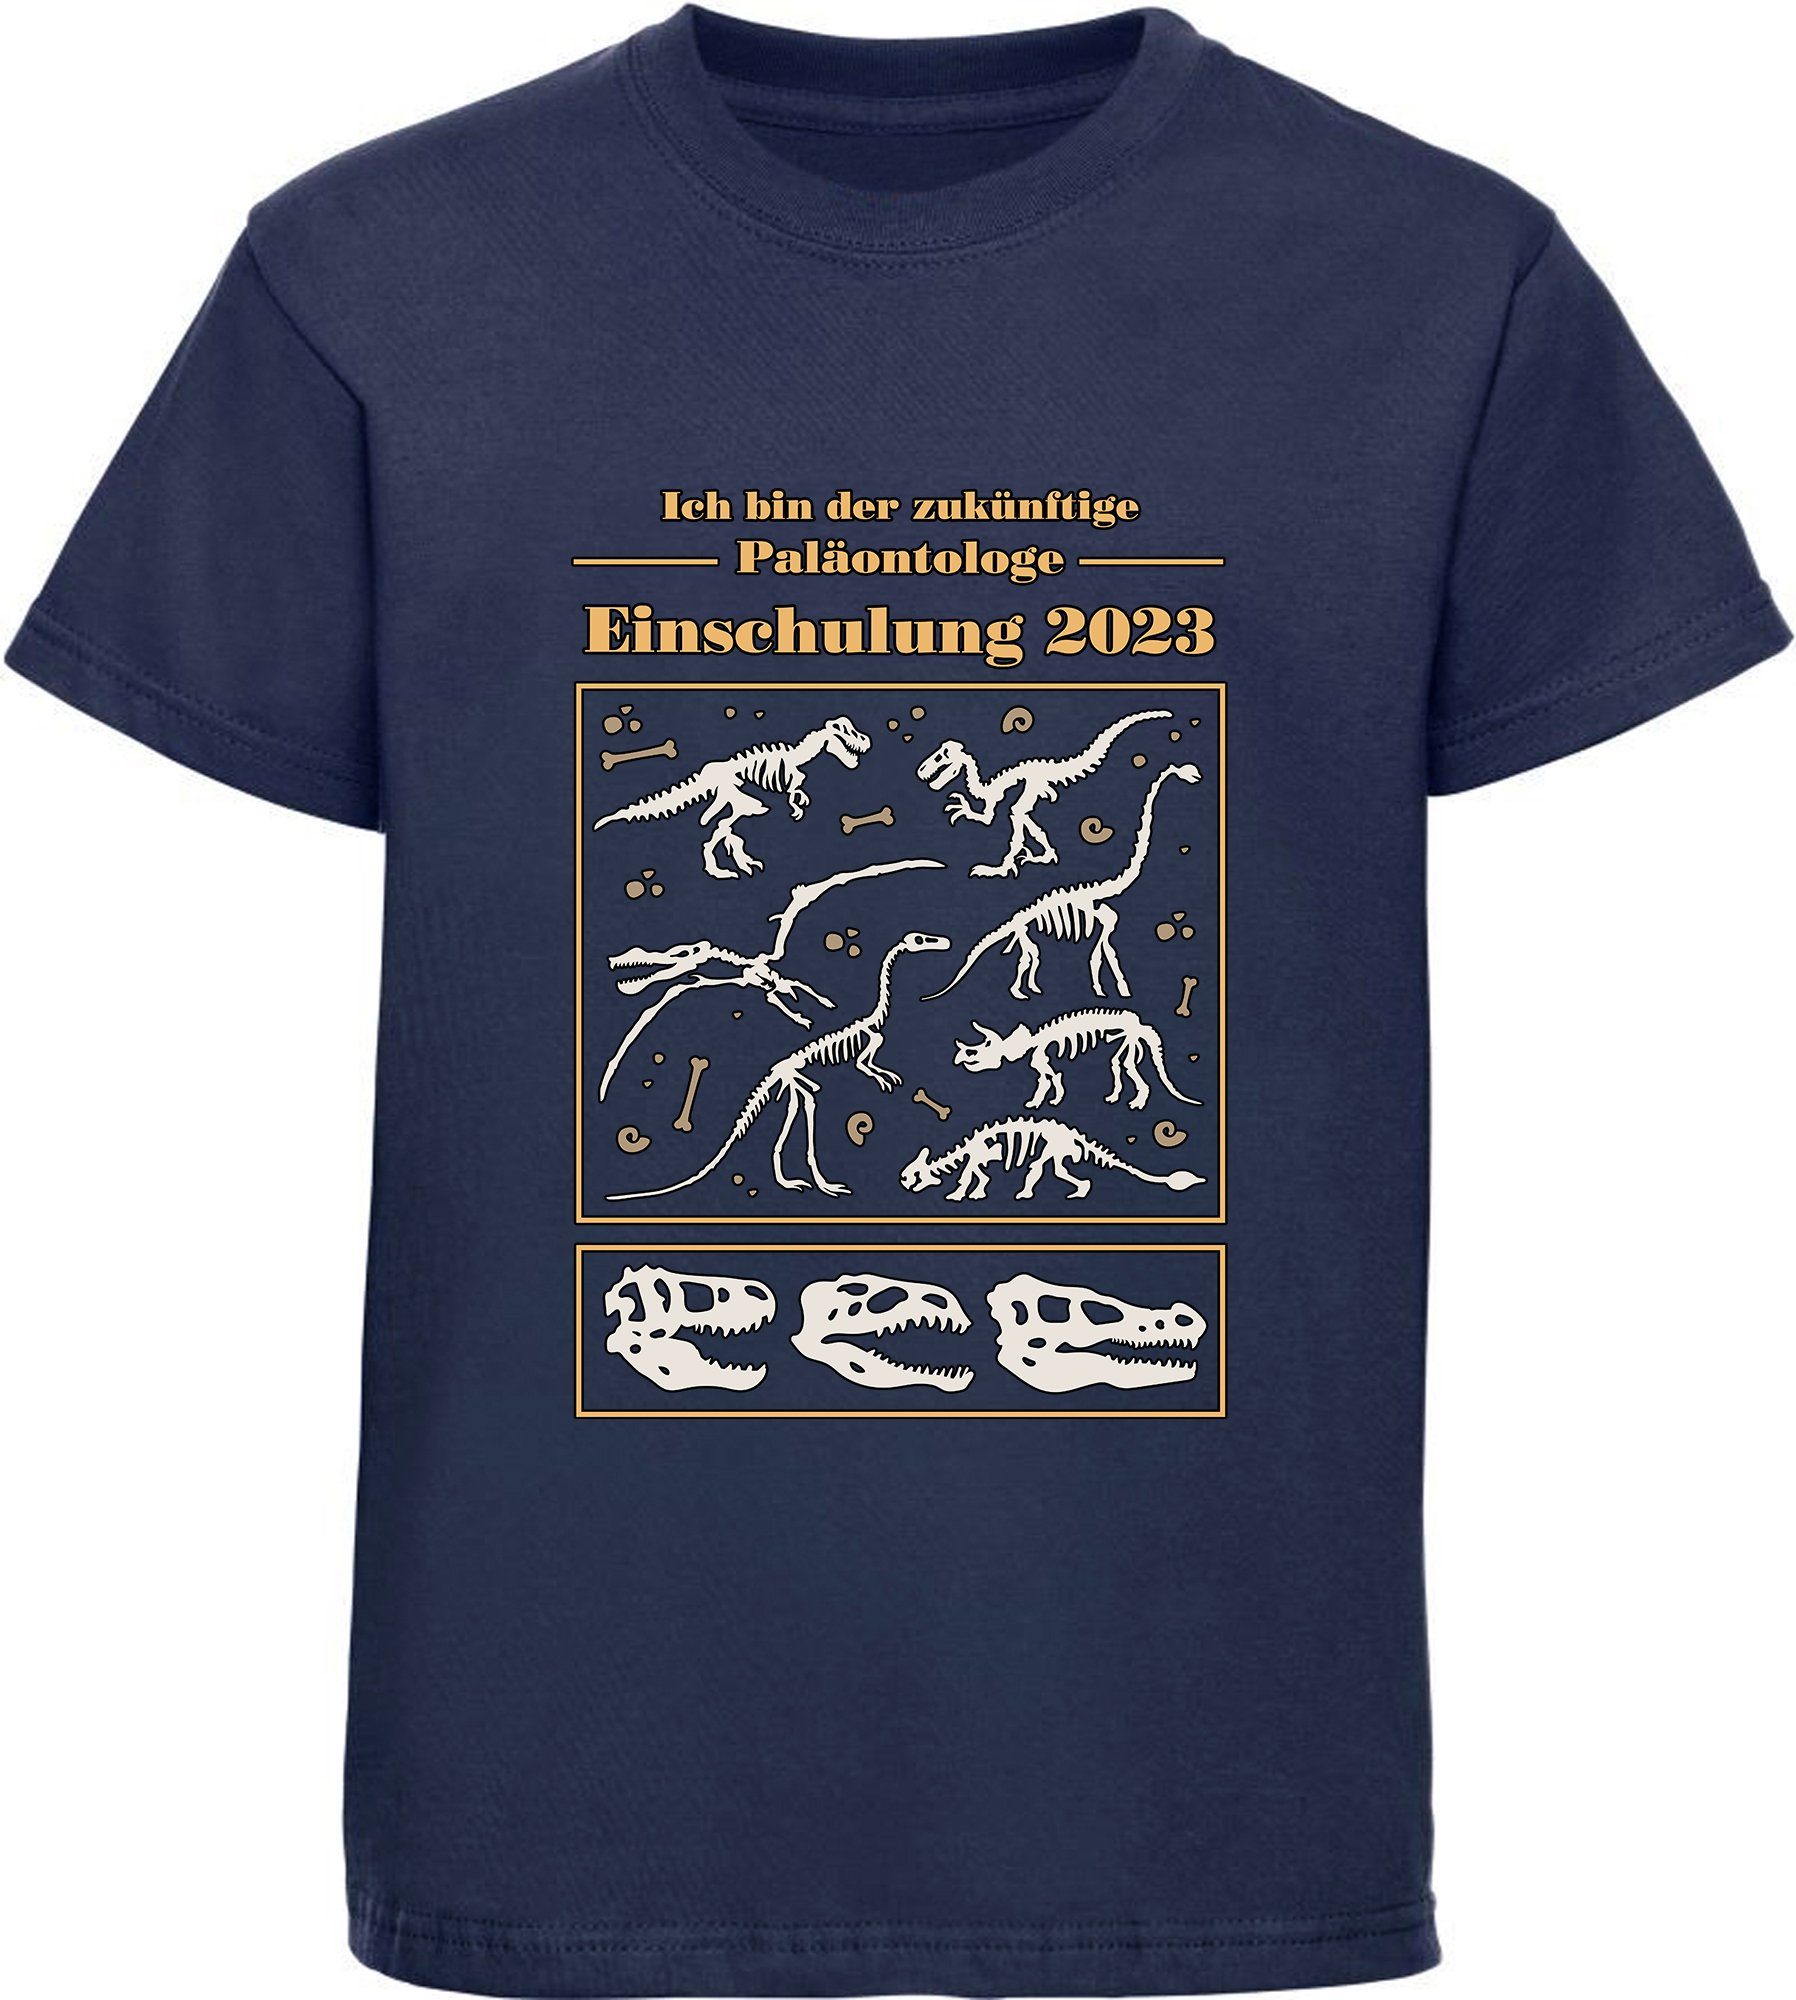 zukünftige Print-Shirt bedrucktes rot, 2023, blau, navy weiß, blau MyDesign24 Dino schwarz, Skeletten Einschulung i36 Baumwollshirt T-Shirt Kinder mit Paläontologe